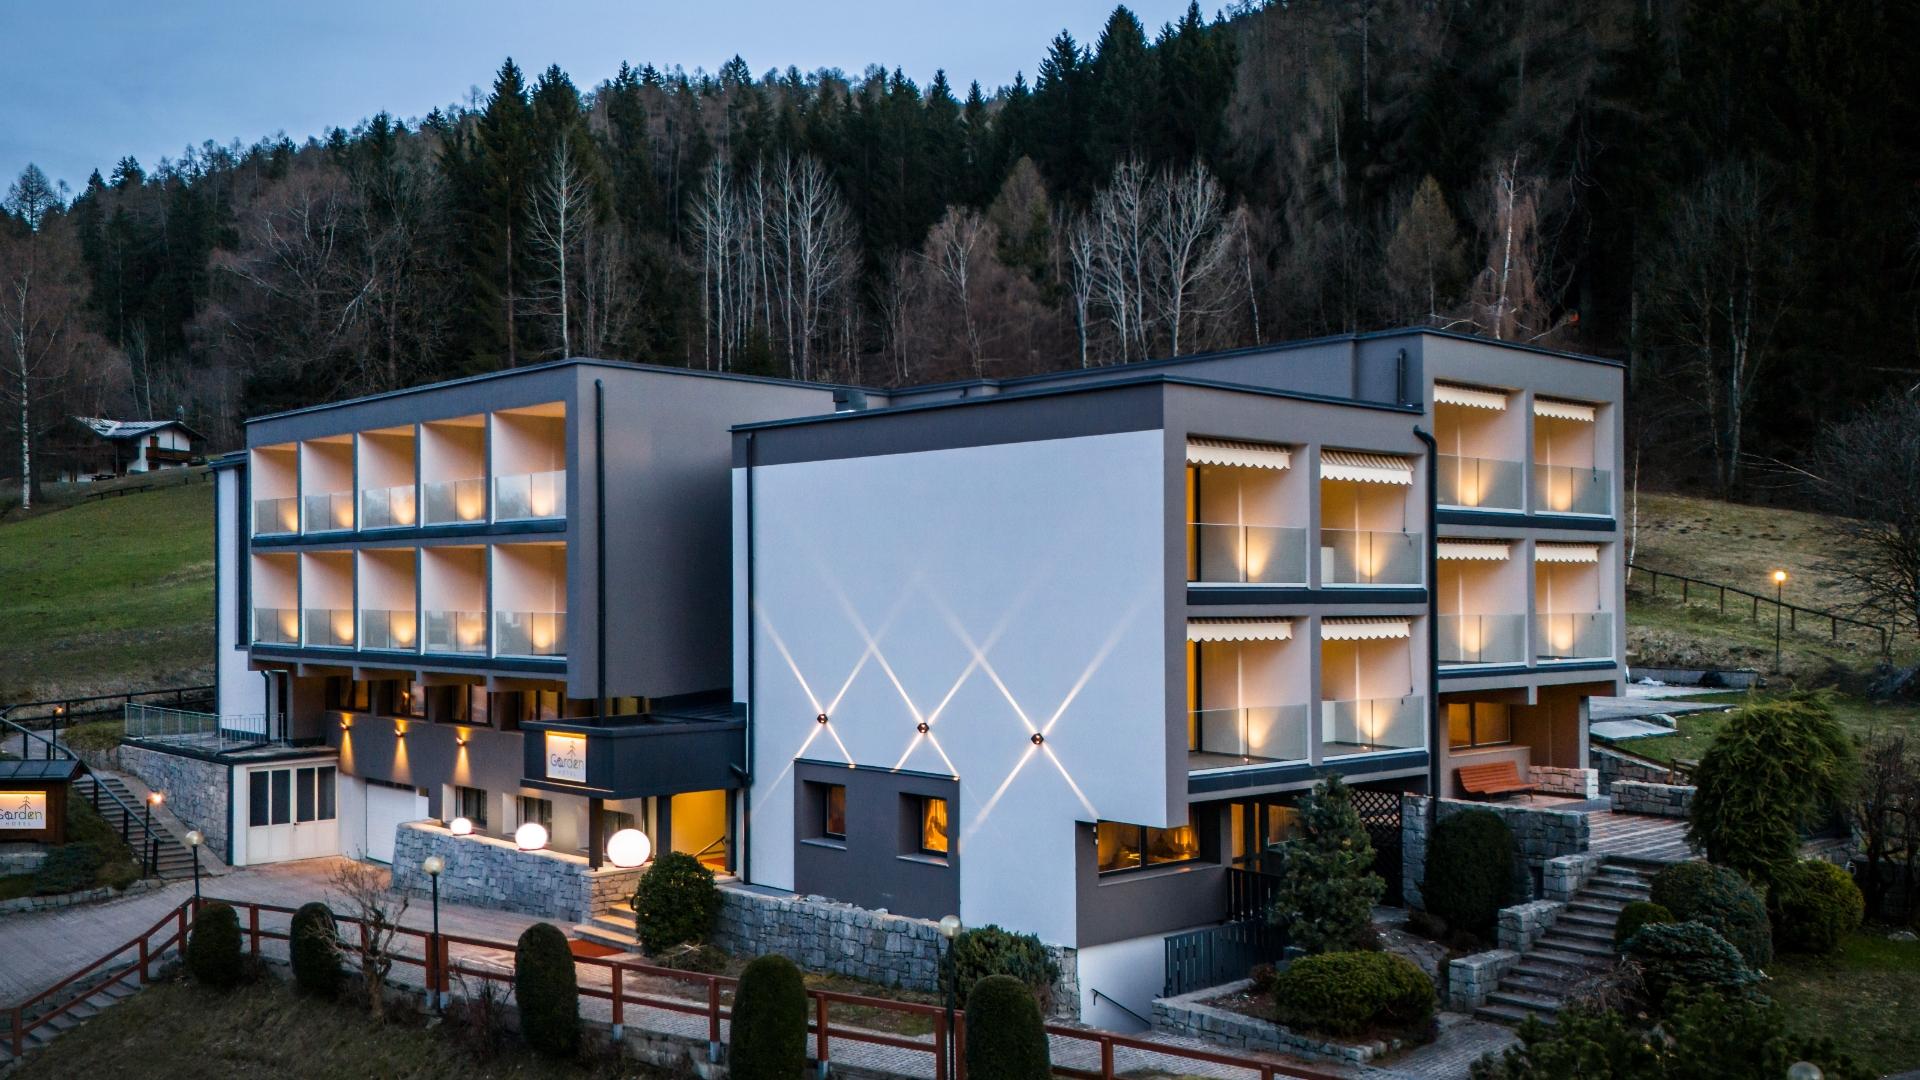 Modernes Hotel in der Natur, mit beleuchteten Balkonen und Blick auf die Hügel.